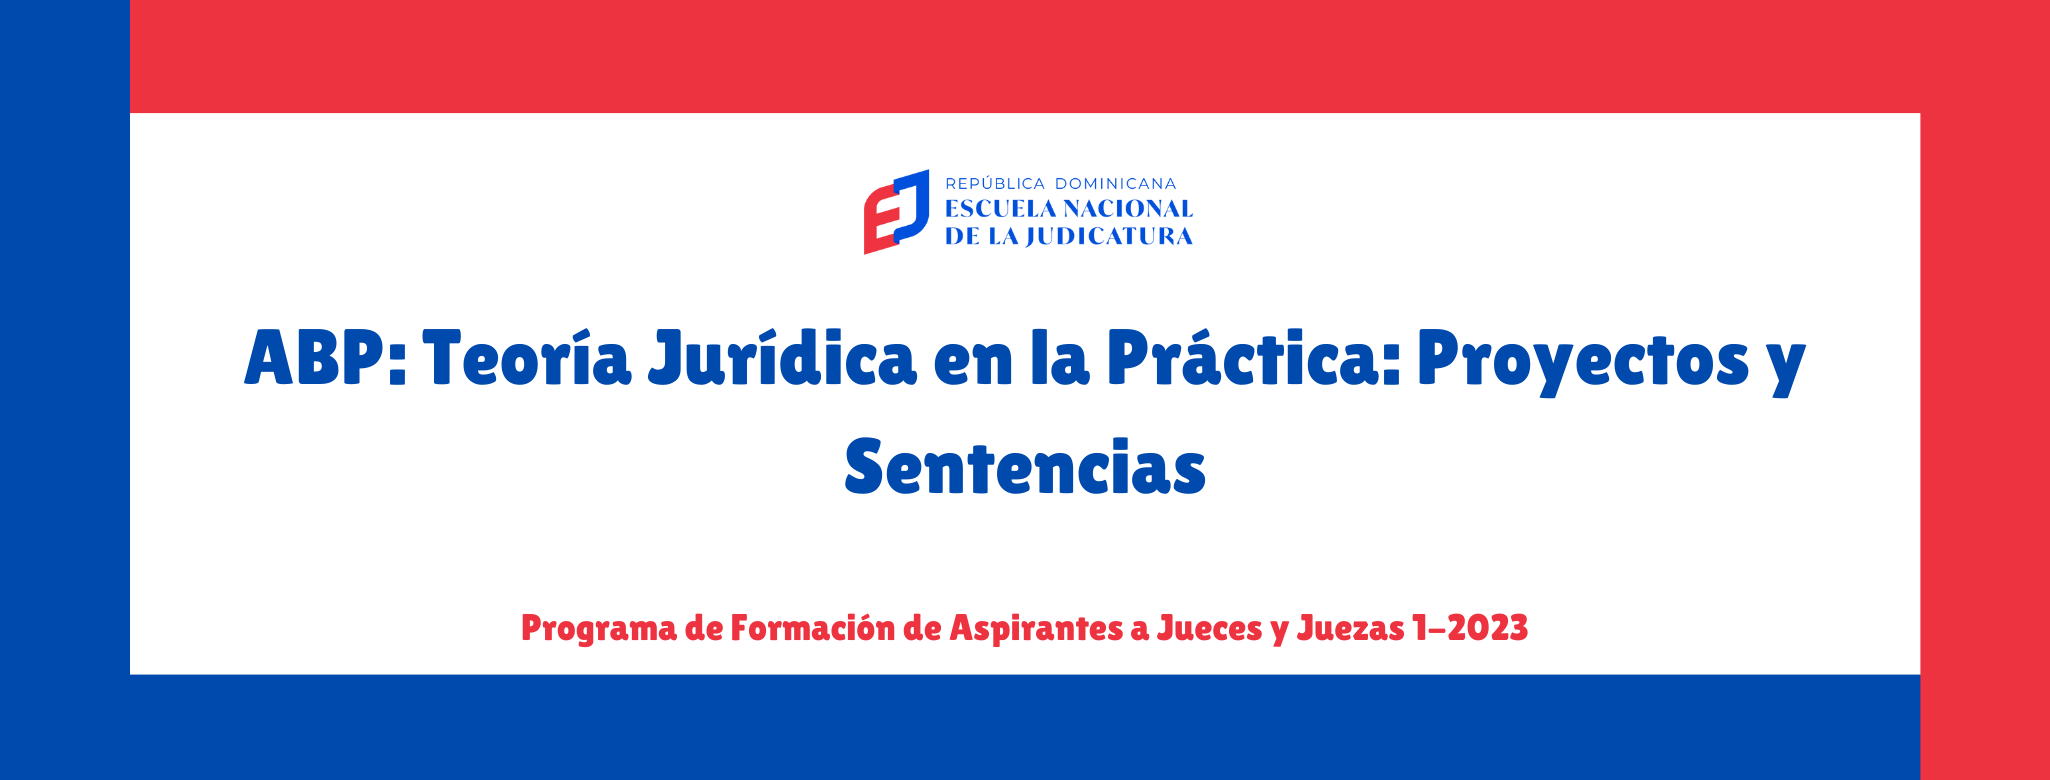 AJP-205-23-01 ABP: Teoría Jurídica en la Práctica: Proyectos y Sentencias (AJ 1-2023)